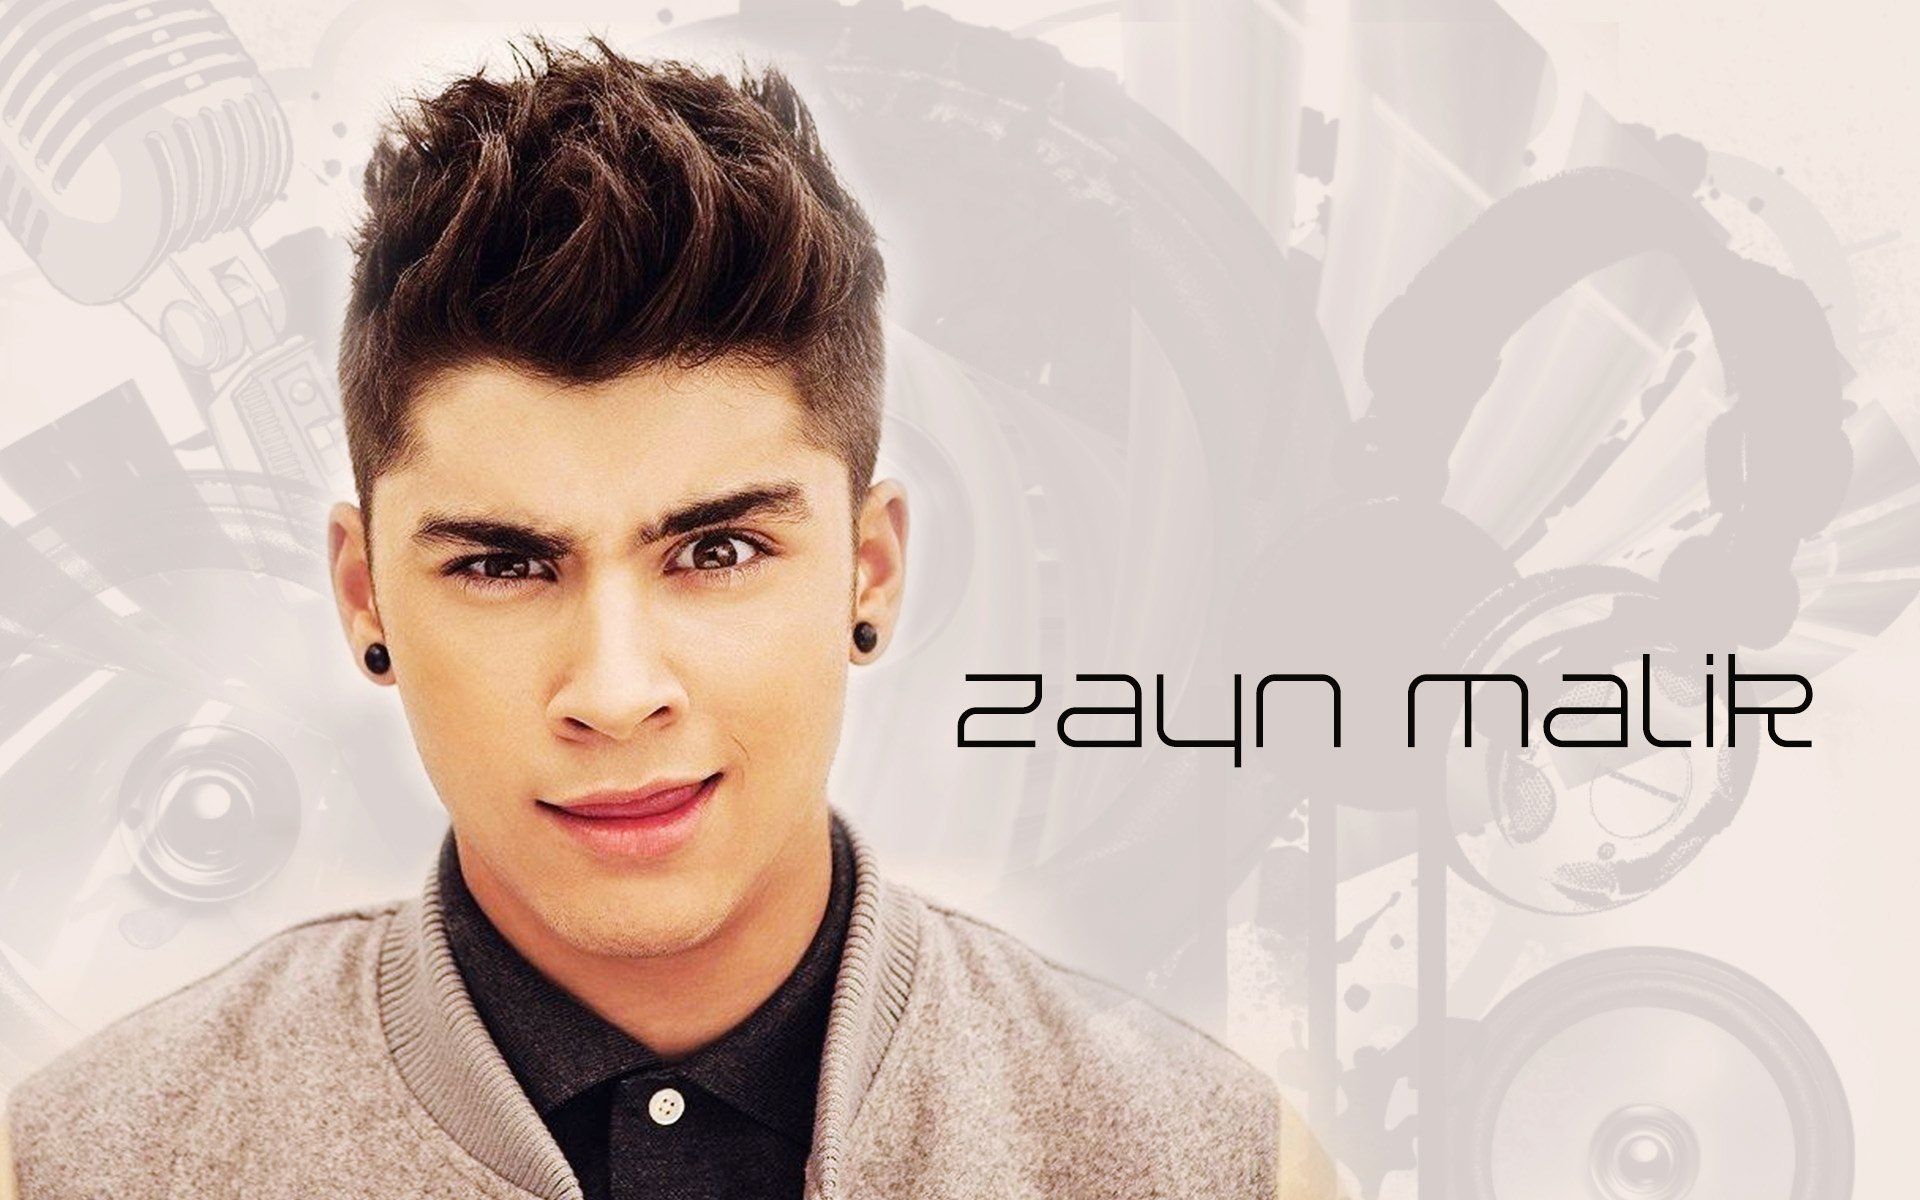 Zayn Malik One Direction Member Wallpaper